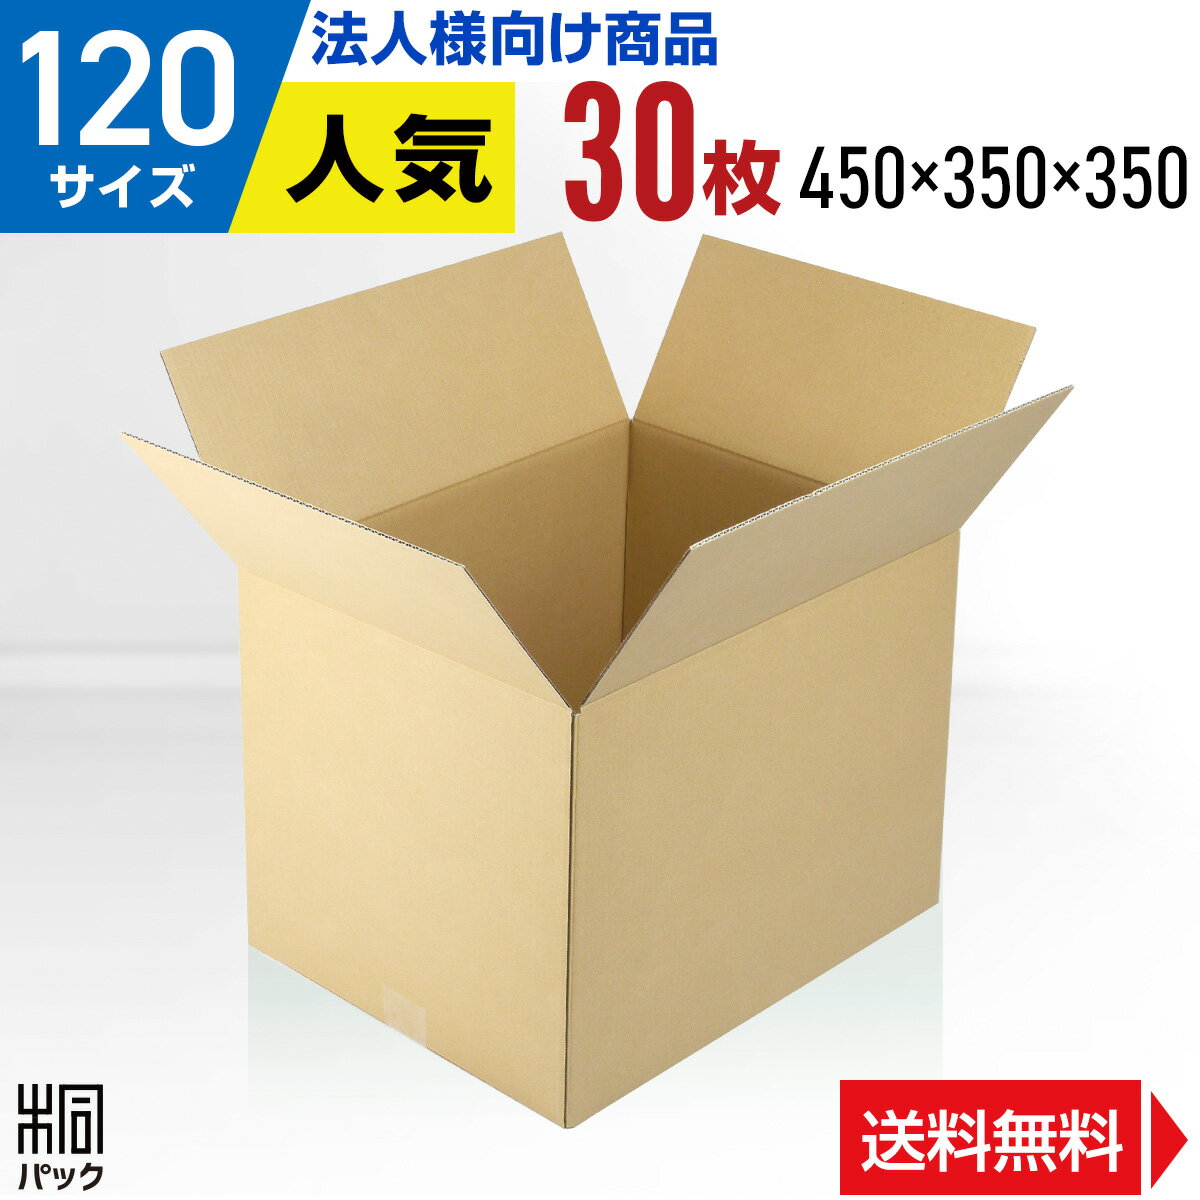 【法人特価】段ボール 箱 120サイズ 30枚 (3mm厚 